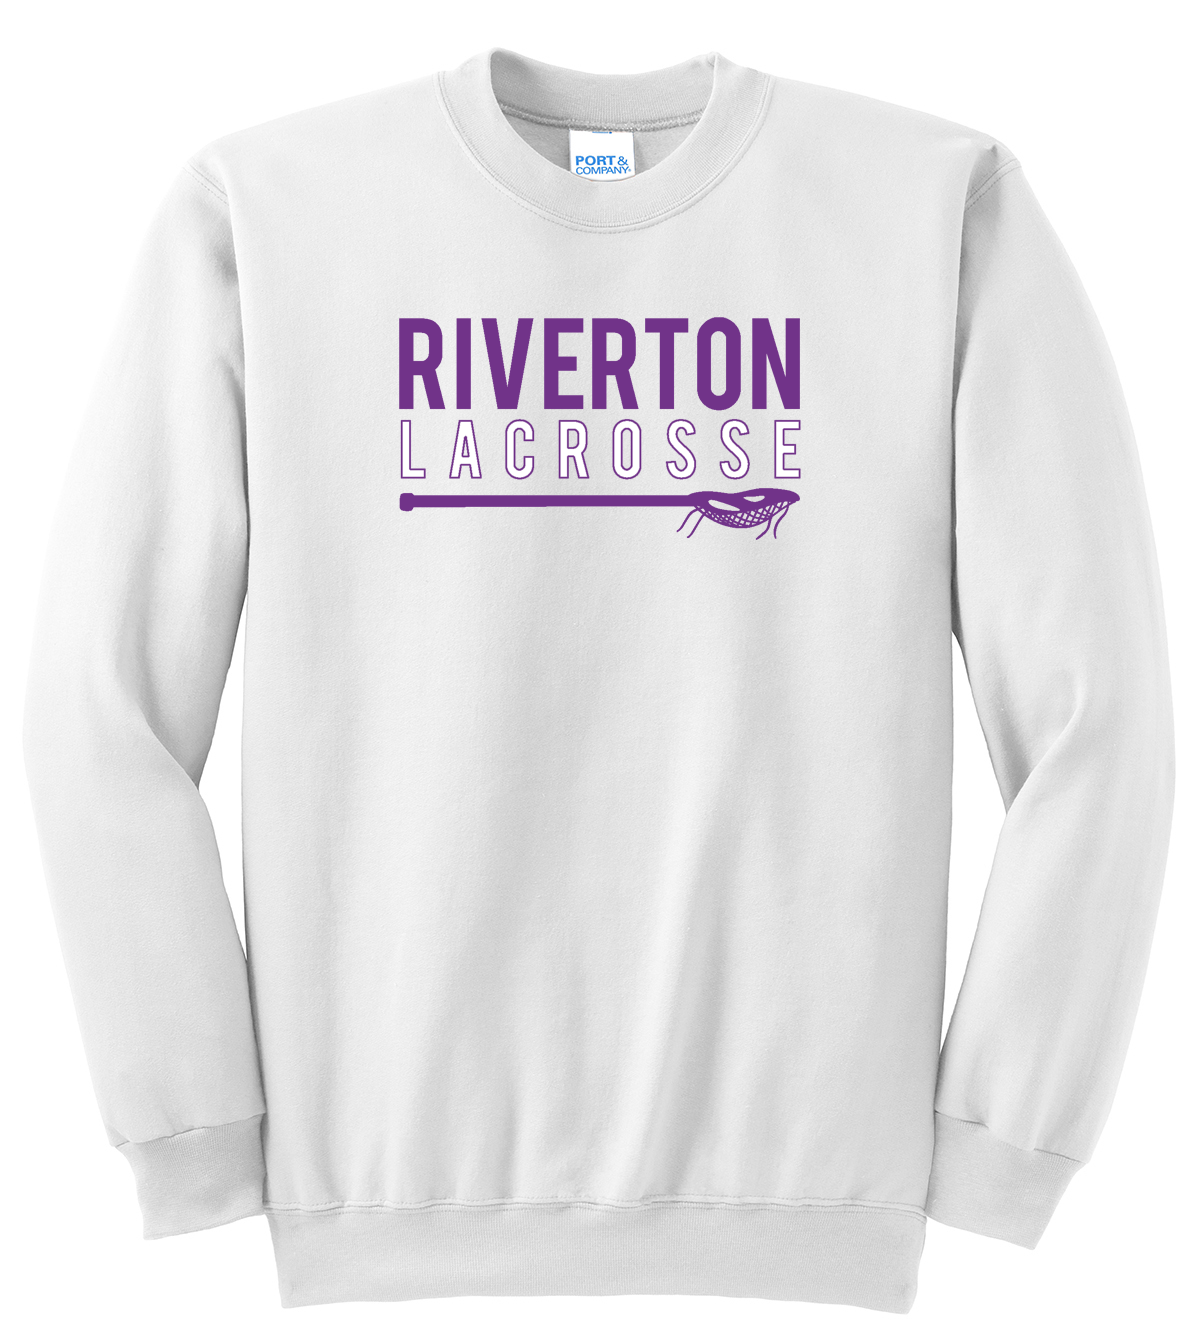 Riverton Lacrosse Crew Neck Sweater